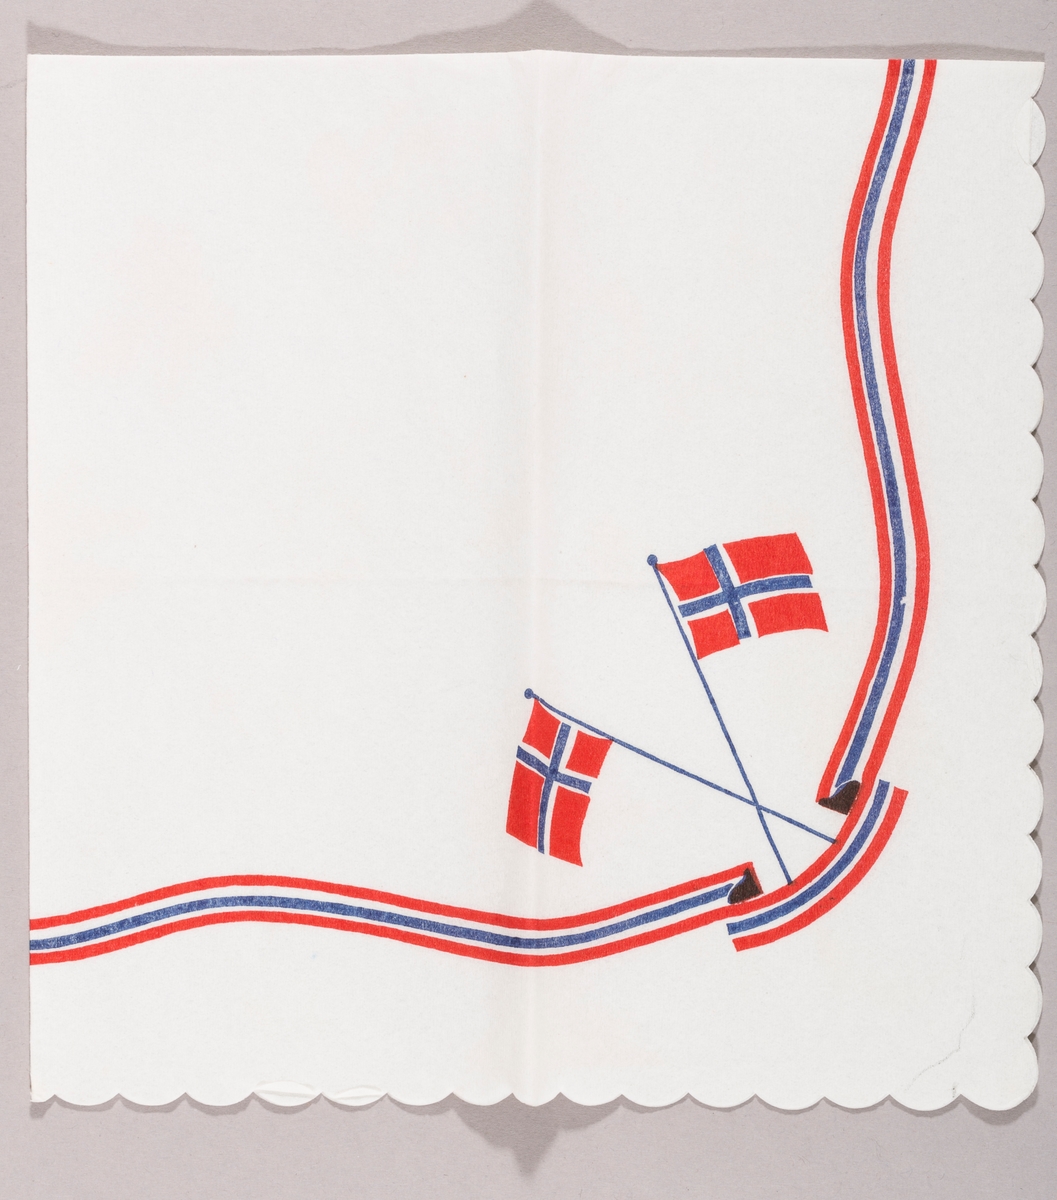 To norske flagg i kryss. Et bånd med knekk i rødt, hvitt og blått